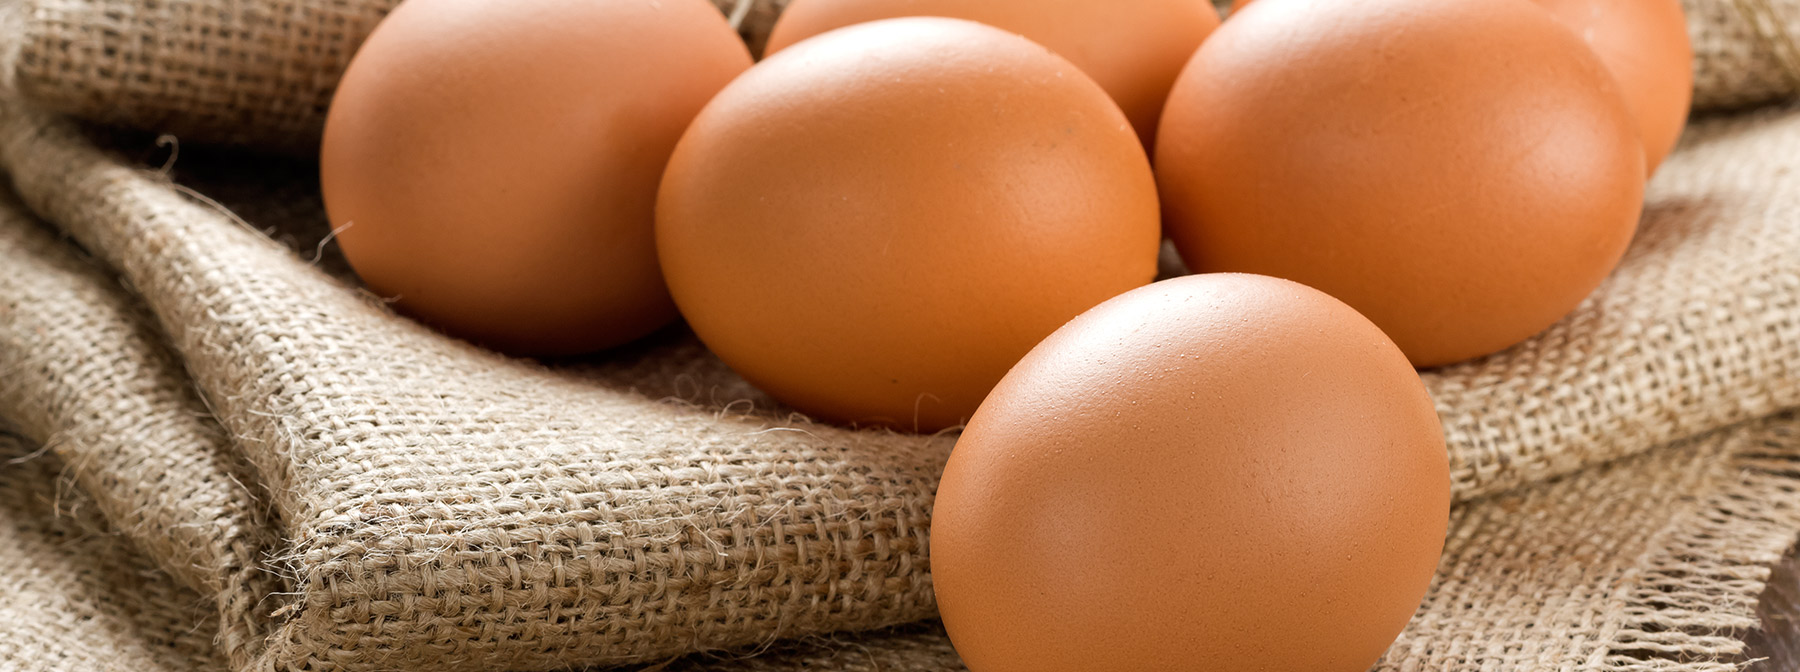 Jajka – Czy są zdrowe?